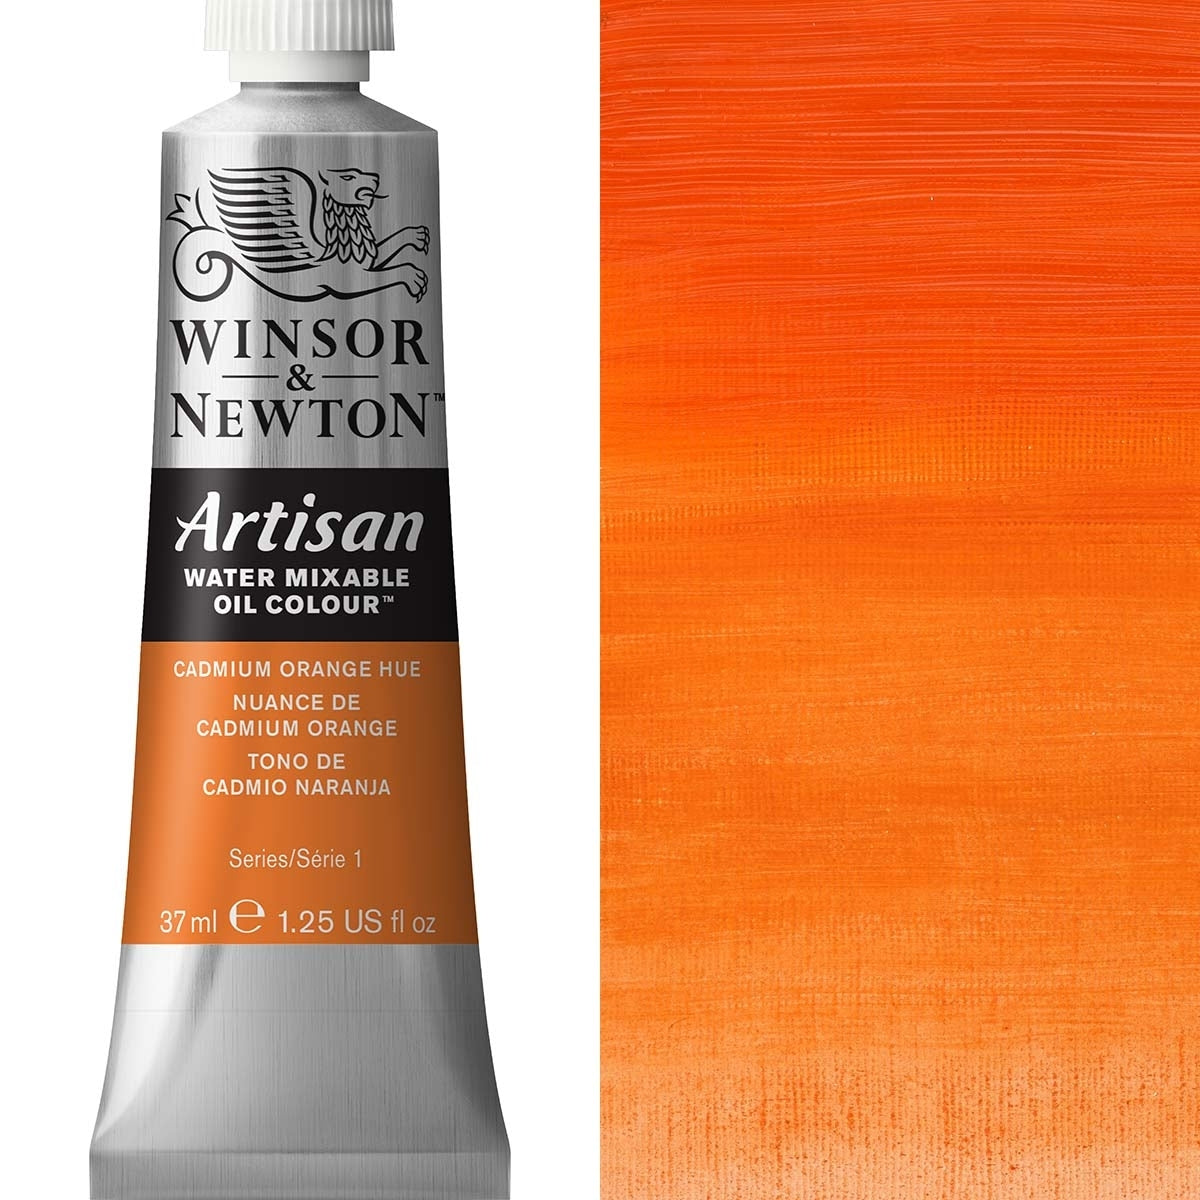 Winsor e Newton - Watermixable di colore olio artigianale - 37 ml - tonalità arancione cadmio